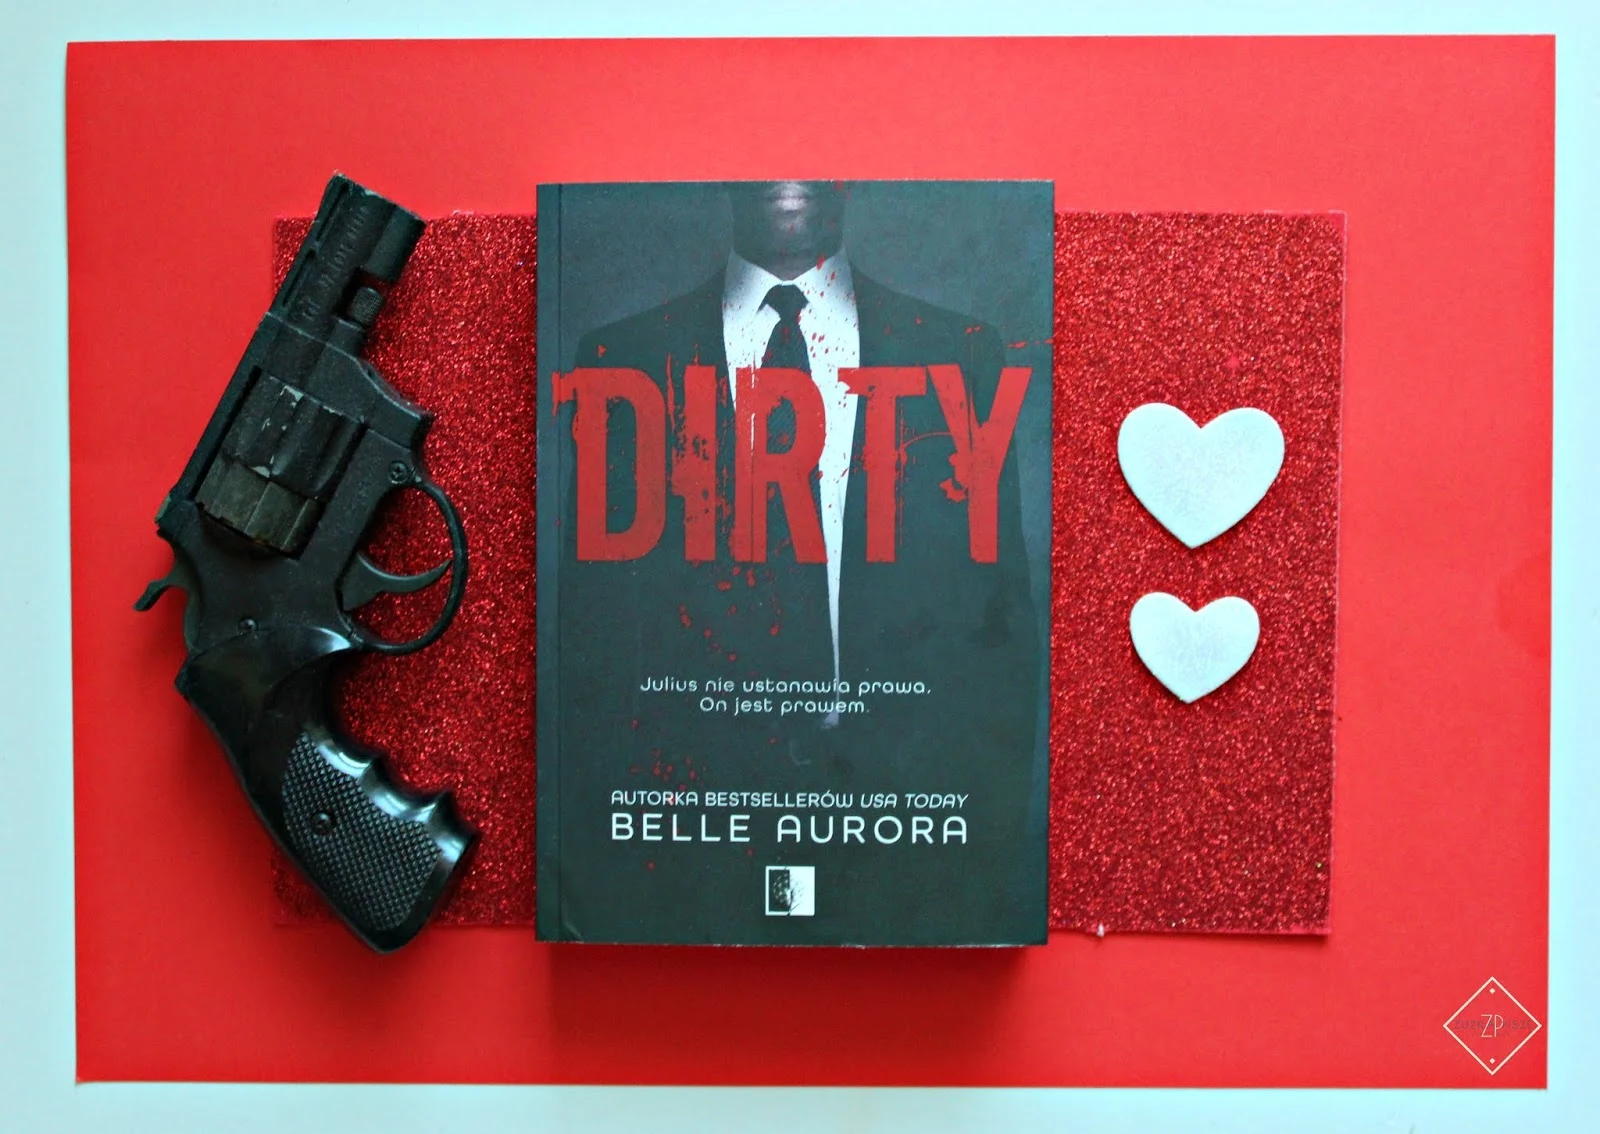 Belle Aurora "Dirty" - recenzja książki